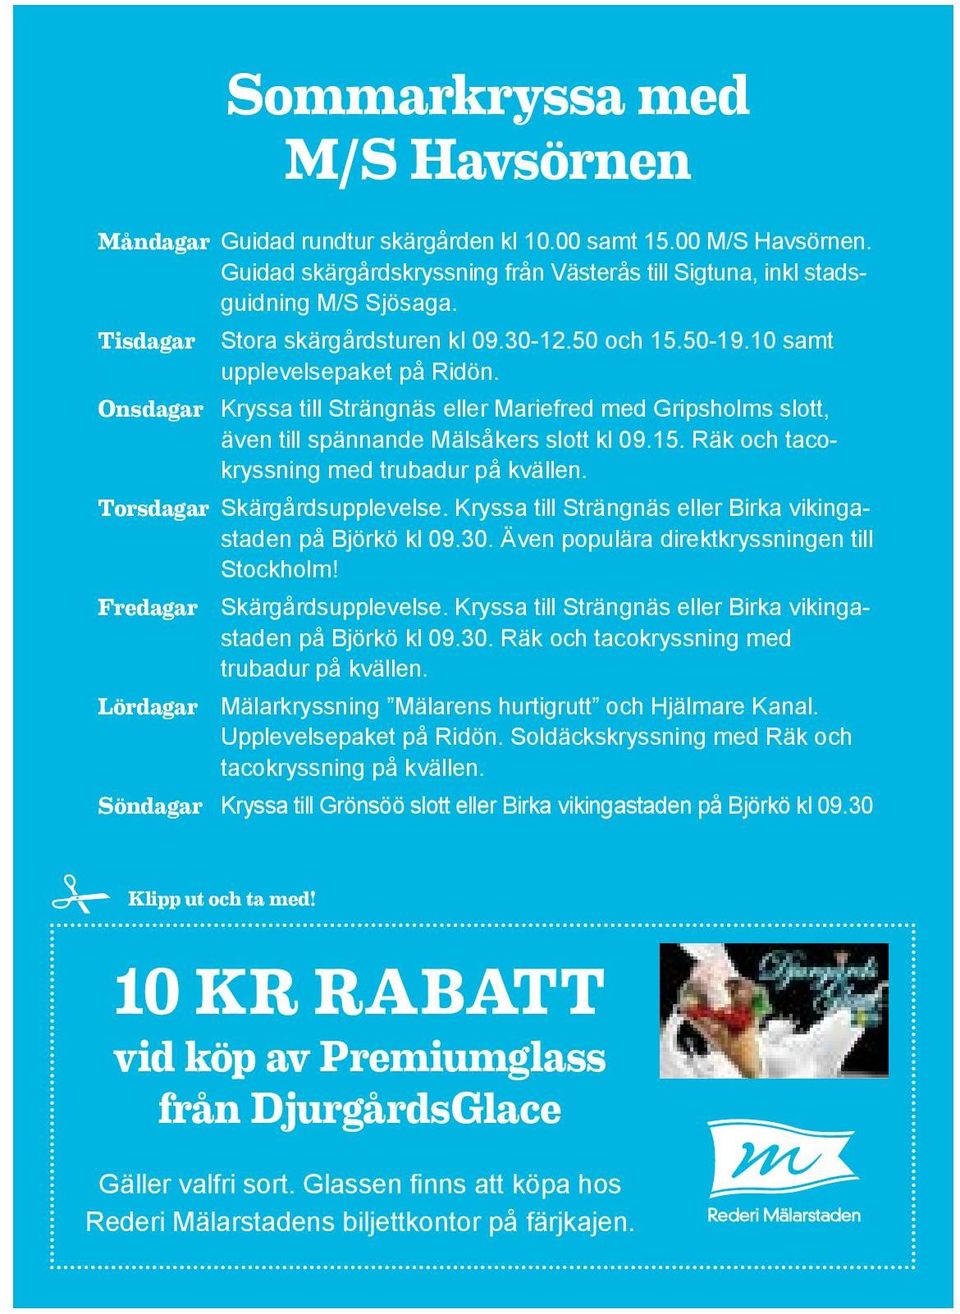 Onsdagar Kryssa till Strängnäs eller Mariefred med Gripsholms slott, även till spännande Mälsåkers slott kl 09.15. Räk och tacokryssning med trubadur på kvällen. Torsdagar Skärgårdsupplevelse.